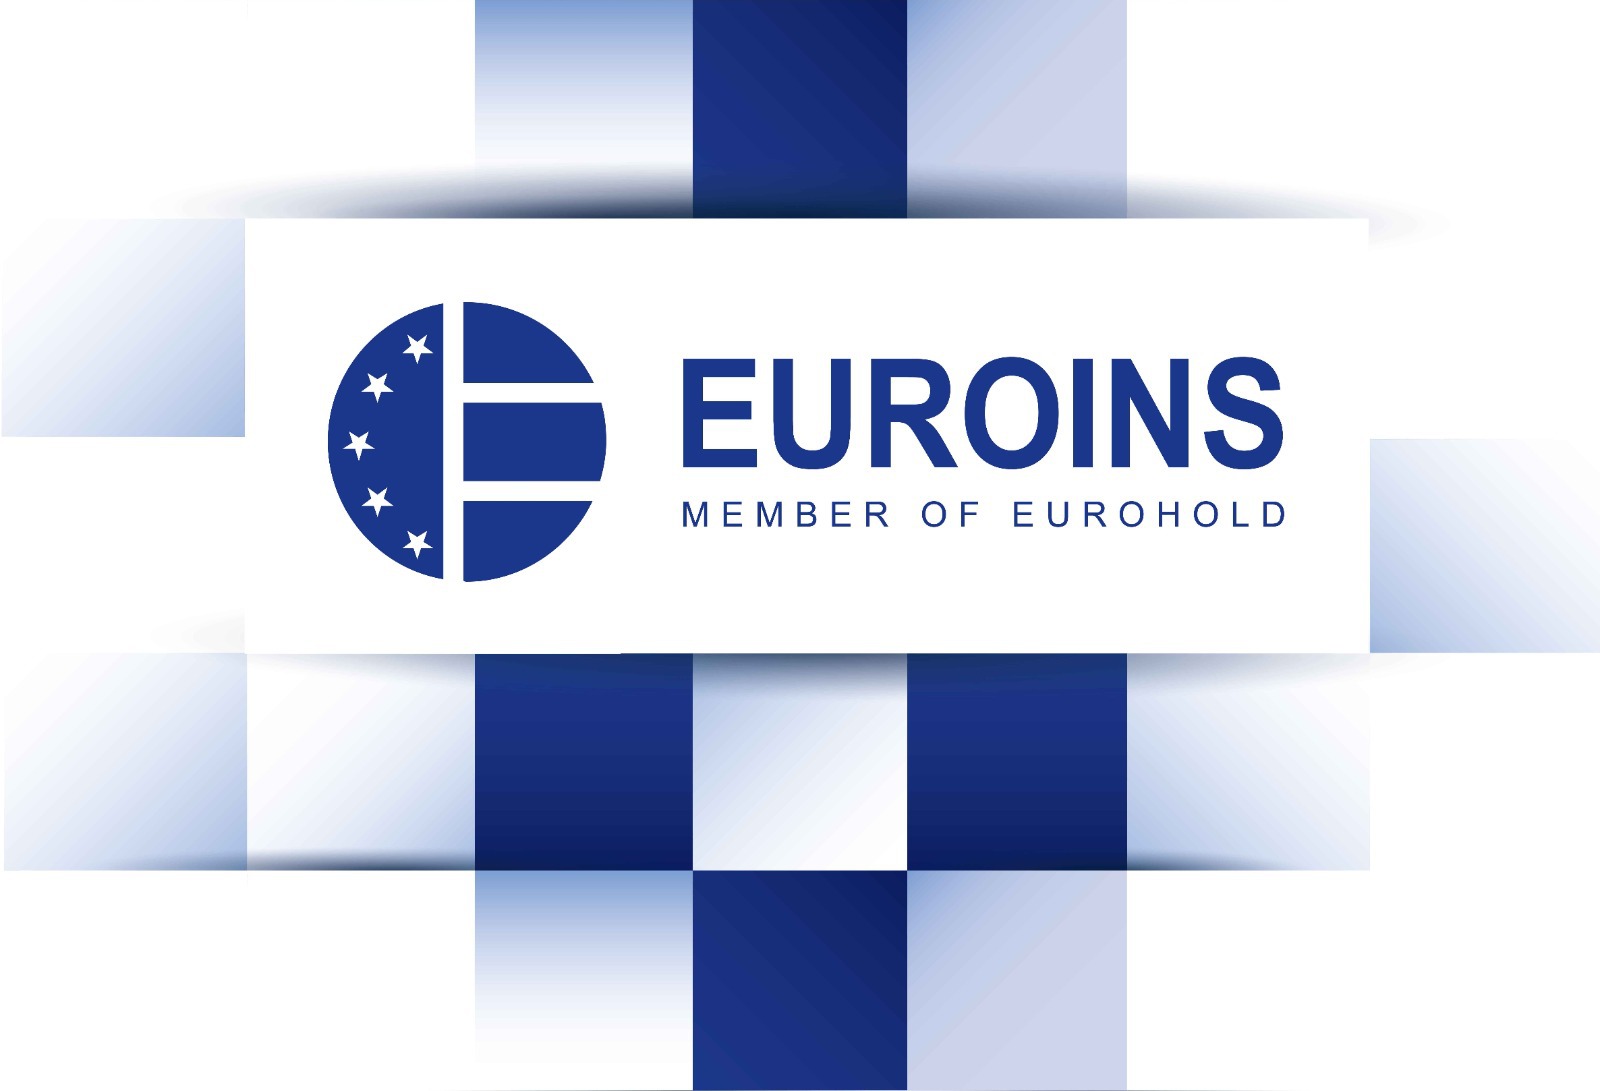 Eurohold, grupul bulgar din care face parte Euroins, susţine că şi-a  îmbunătăţit